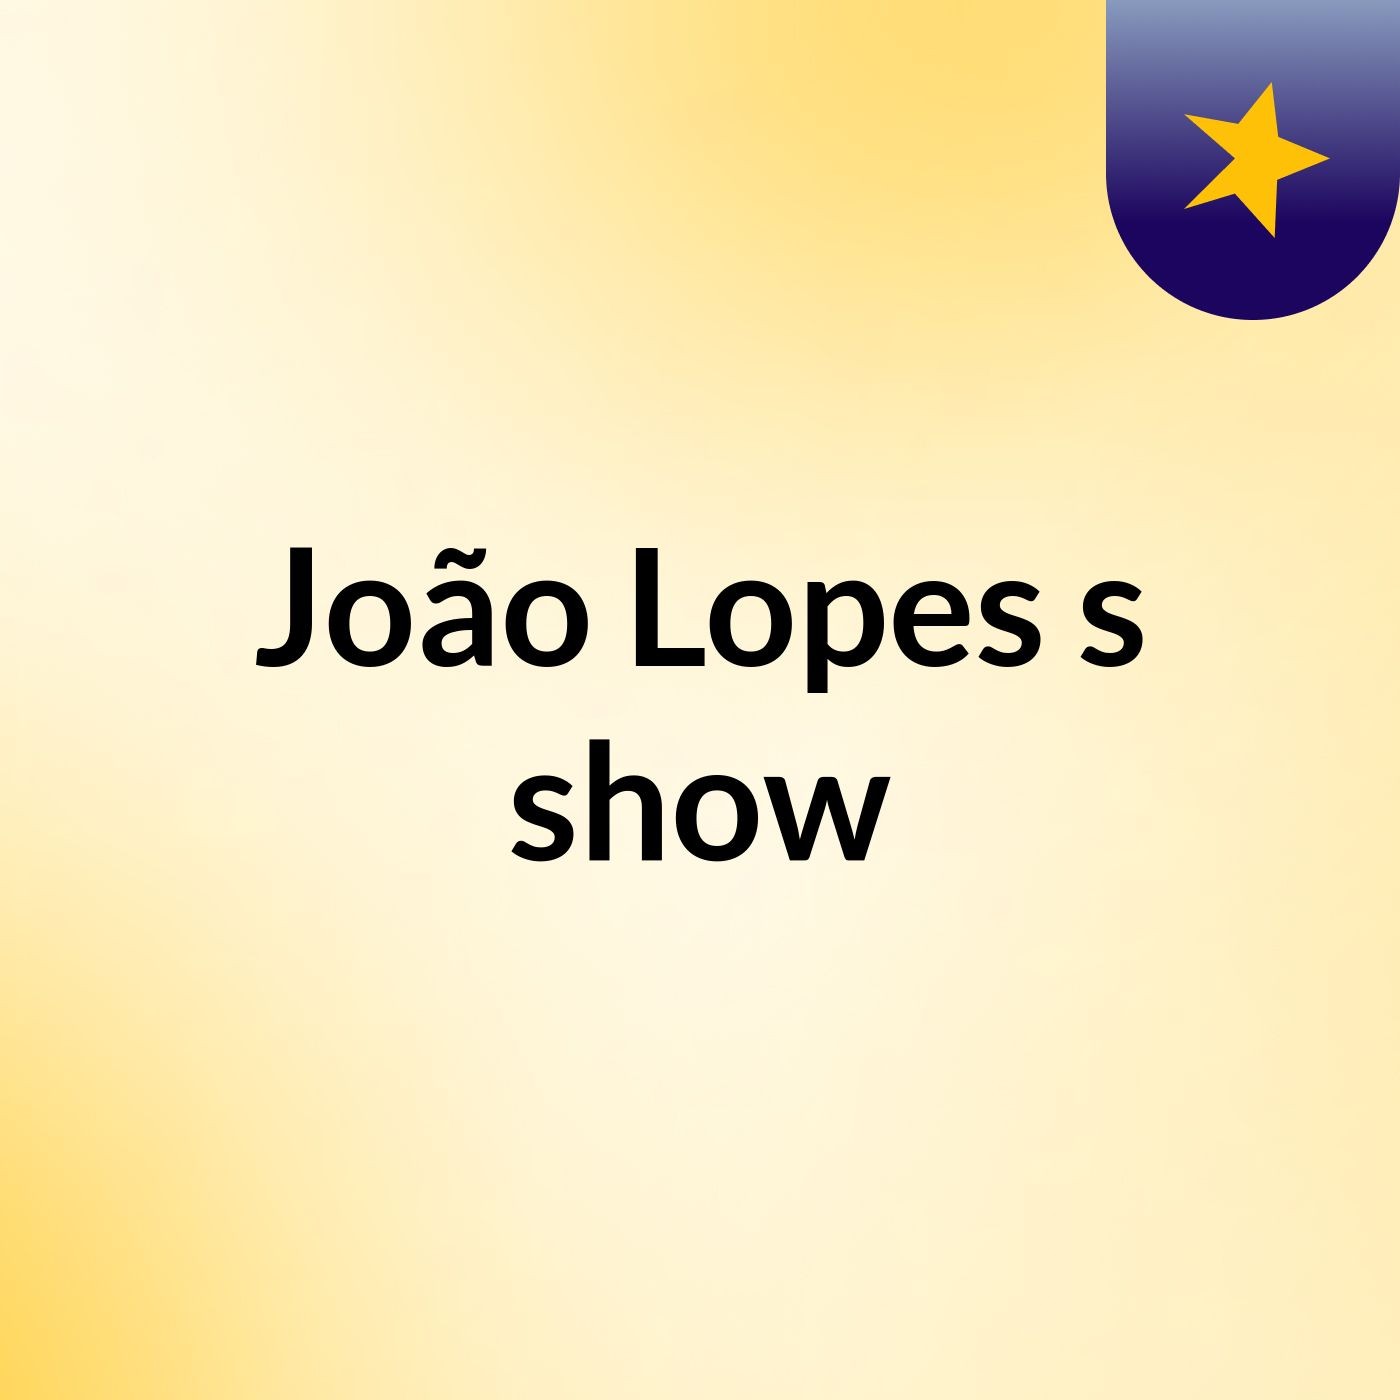 João Lopes's show